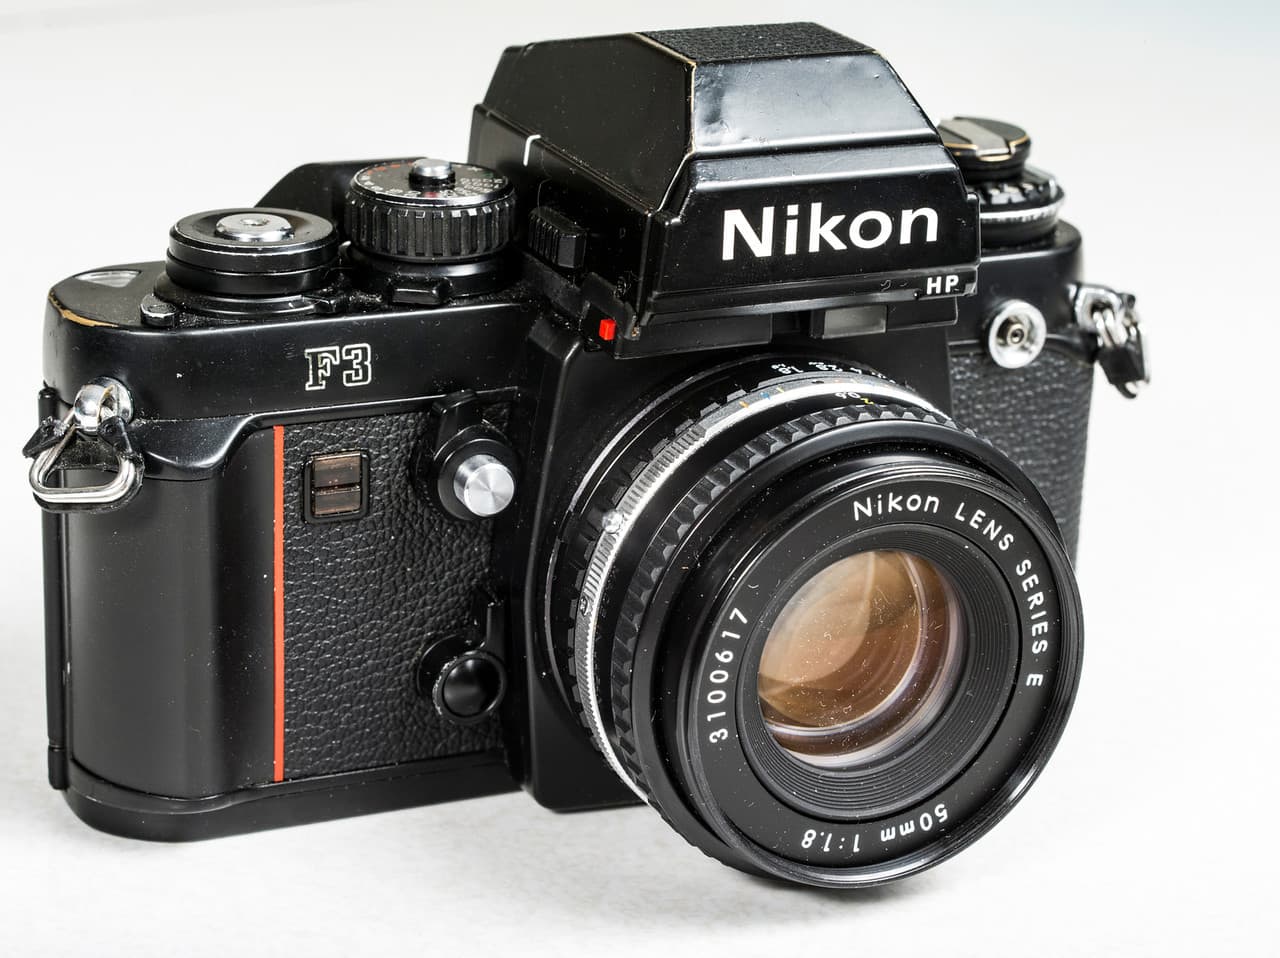 Iconic Nikon cameras - Nikon F3